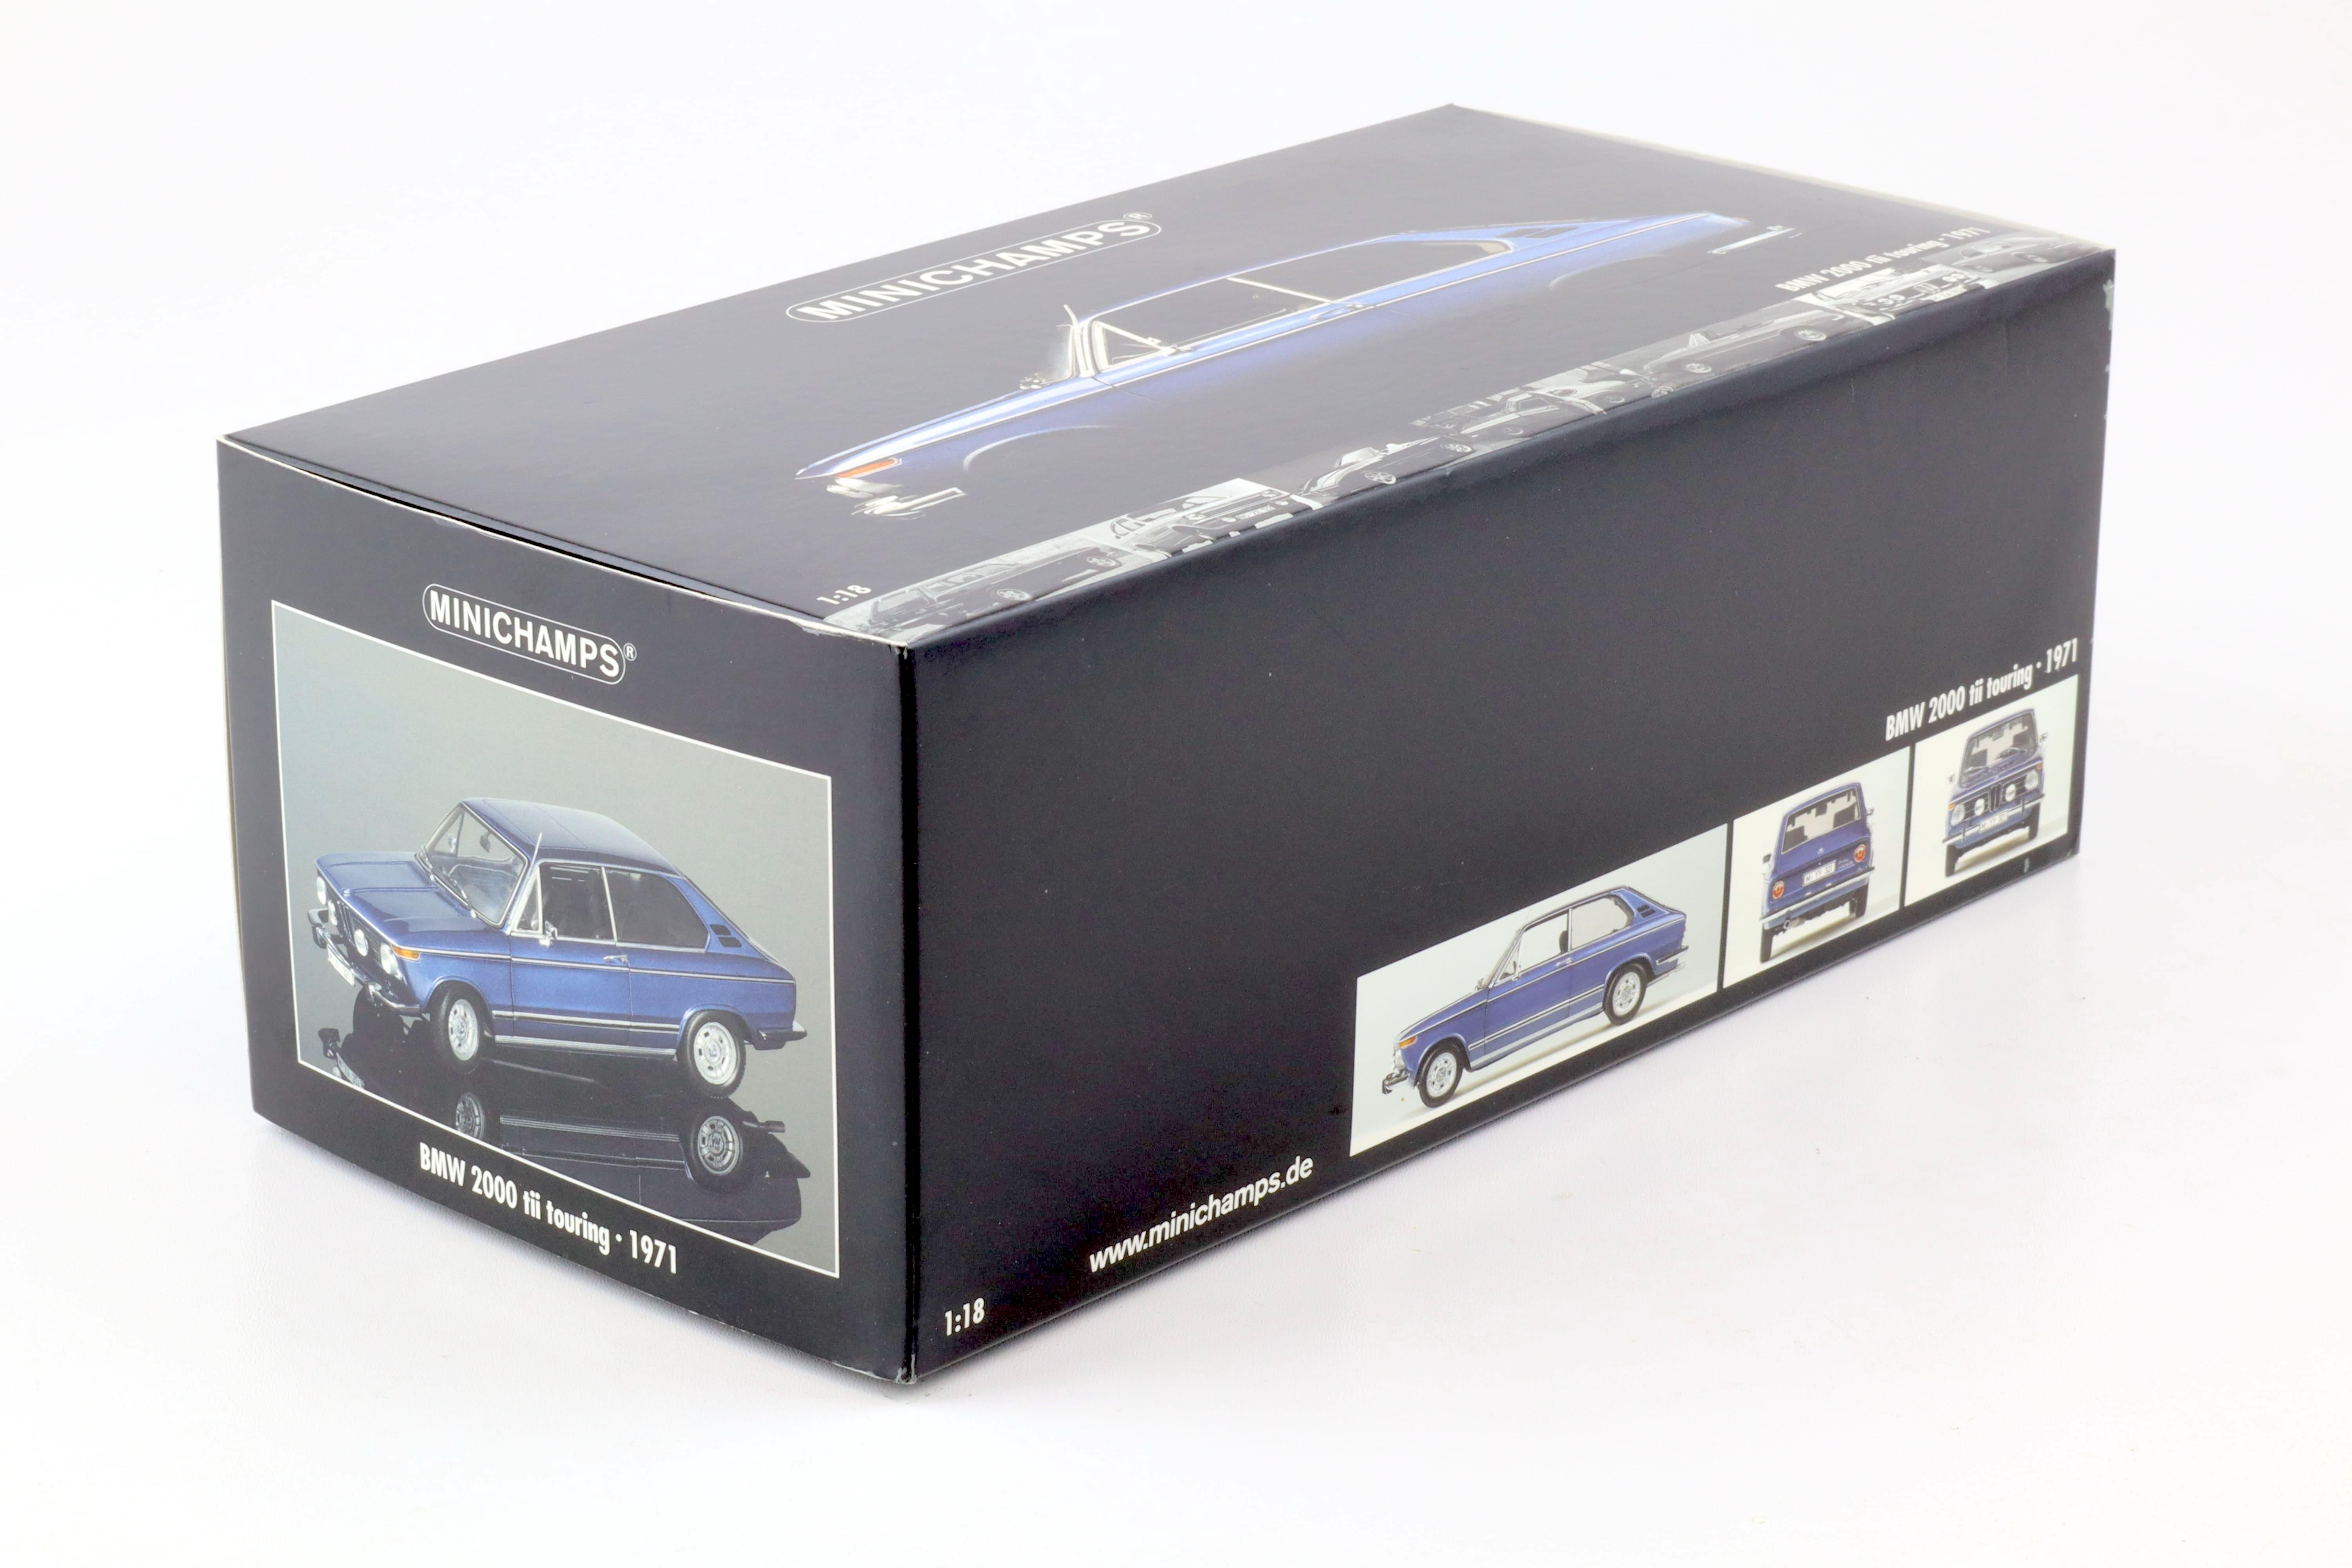 1:18 Minichamps BMW 2000 tii Touring 1971 blue metallic